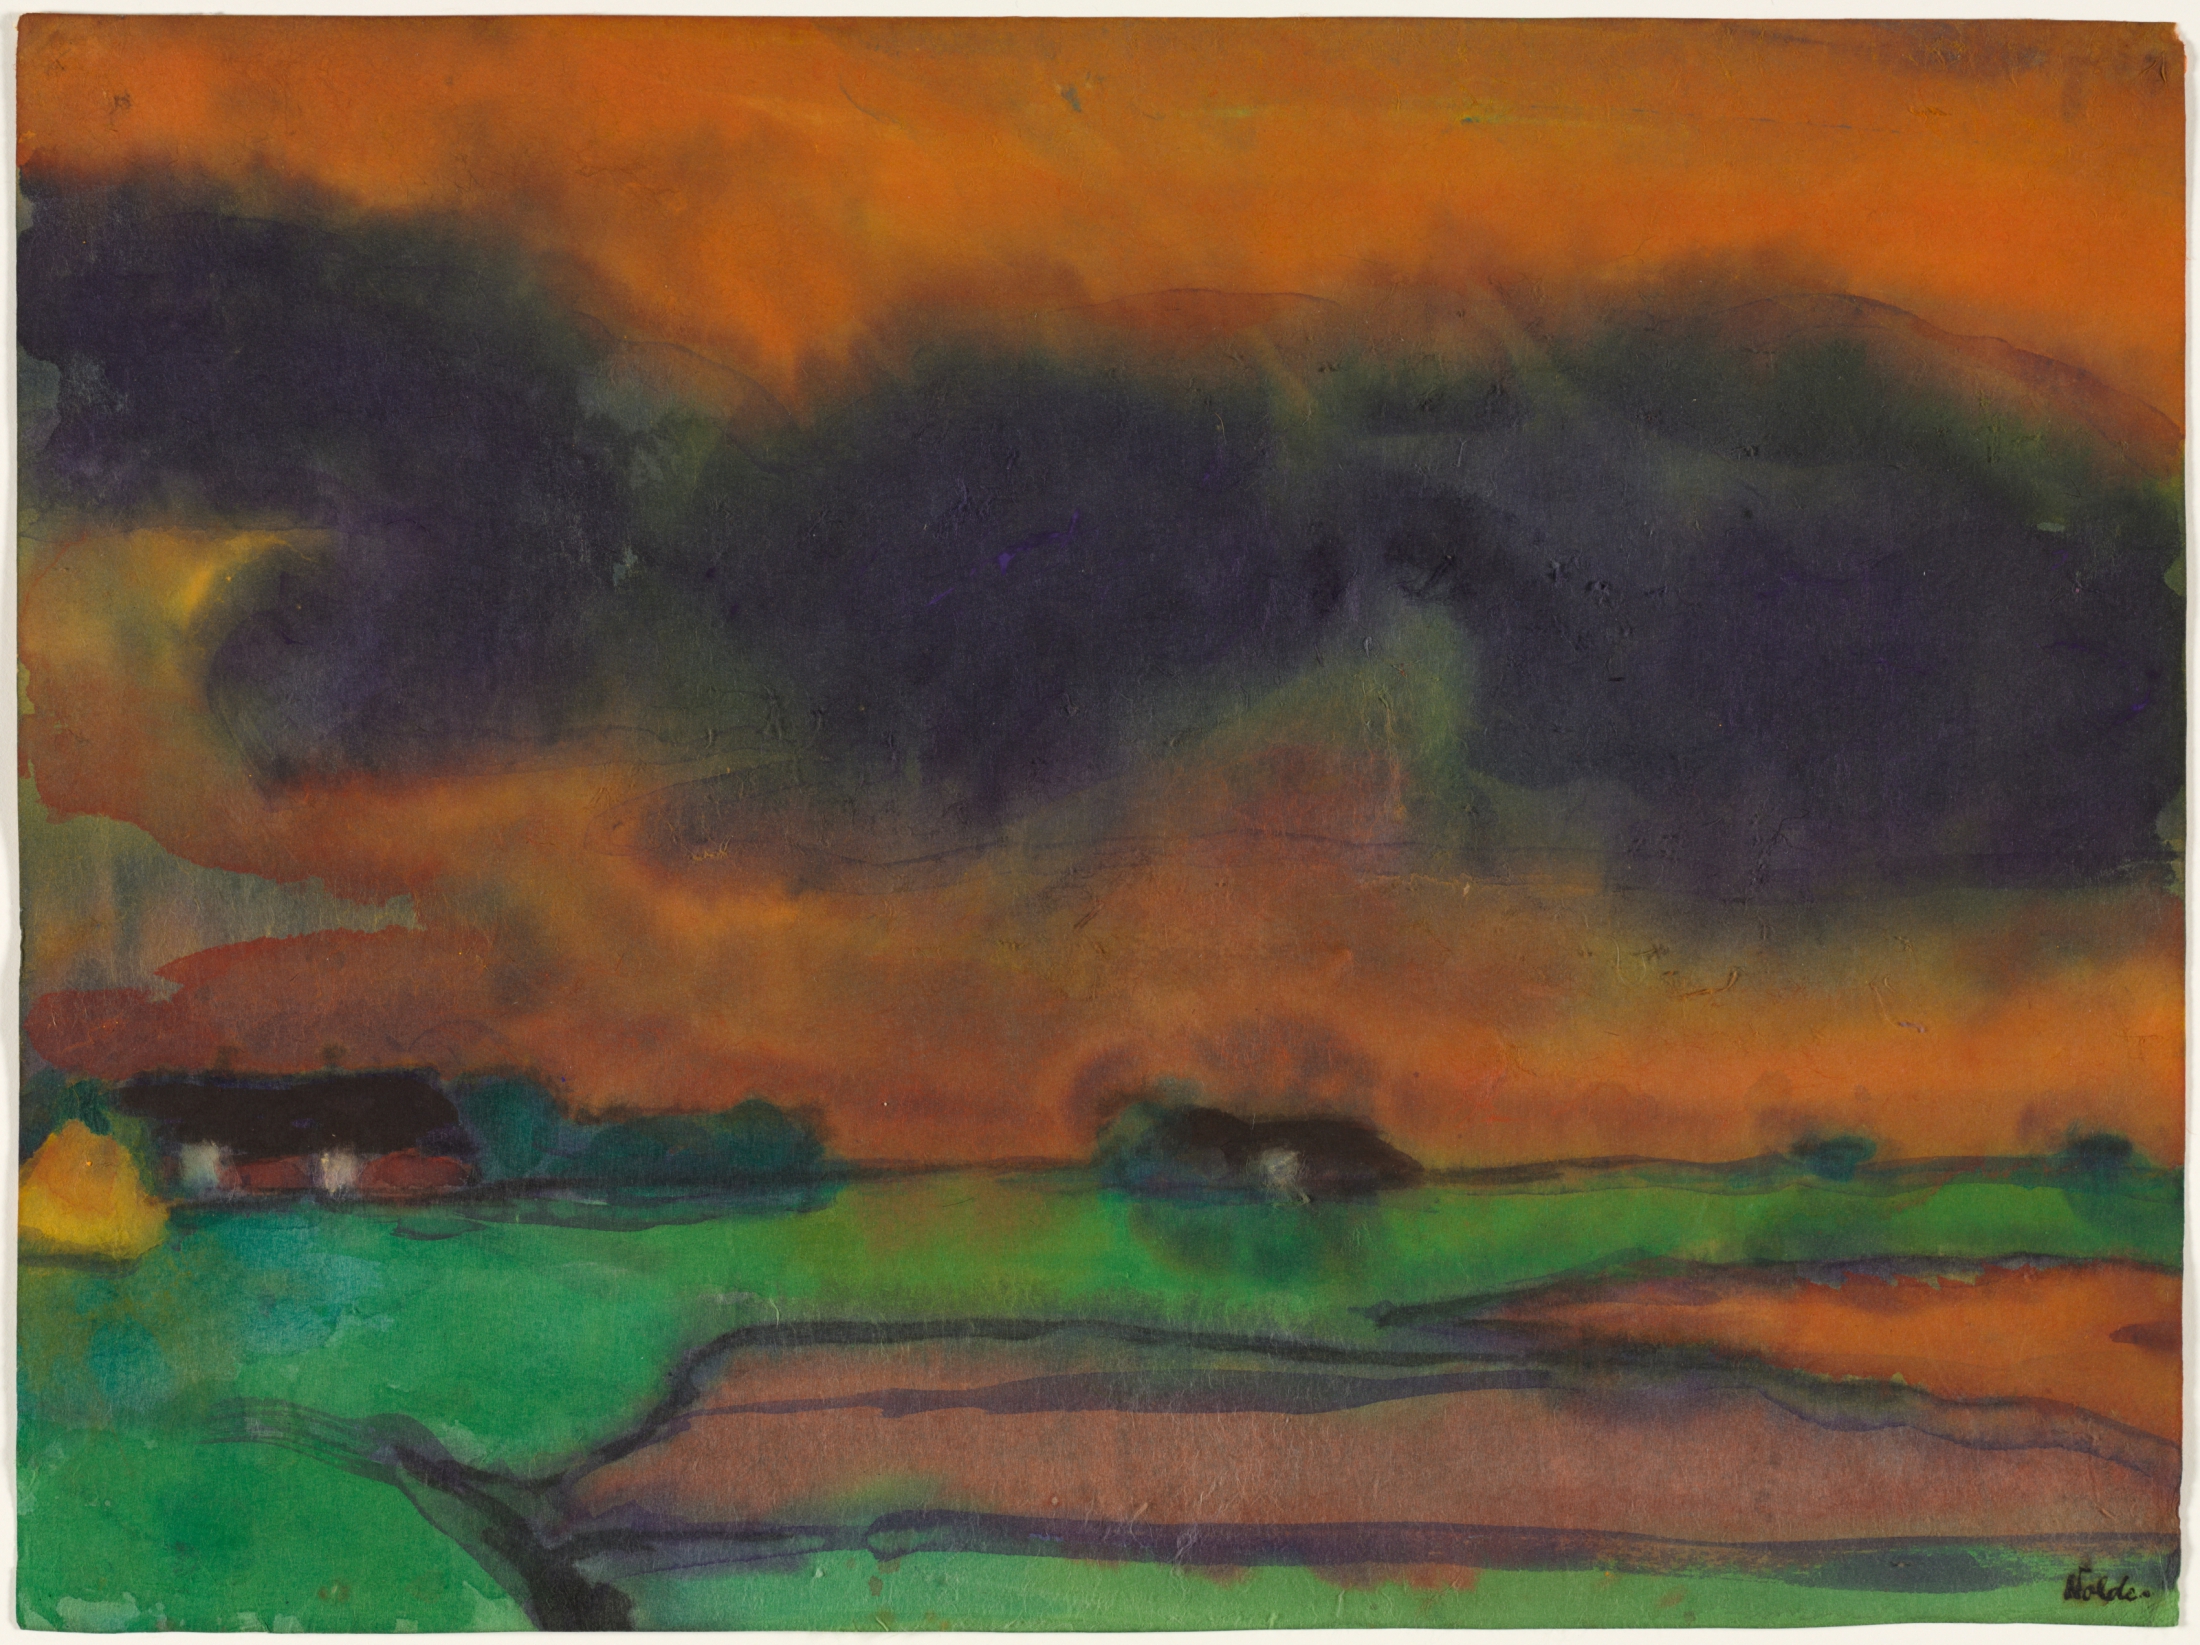 Marsh Landscape, c. 1930–35. Emil Nolde (German, 1876–1956). Watercolor; 34 x 45.5 cm. Bequest of Dr. Paul J. Vignos Jr., 2011.125. © Nolde Stiftung Seebüll, Germany